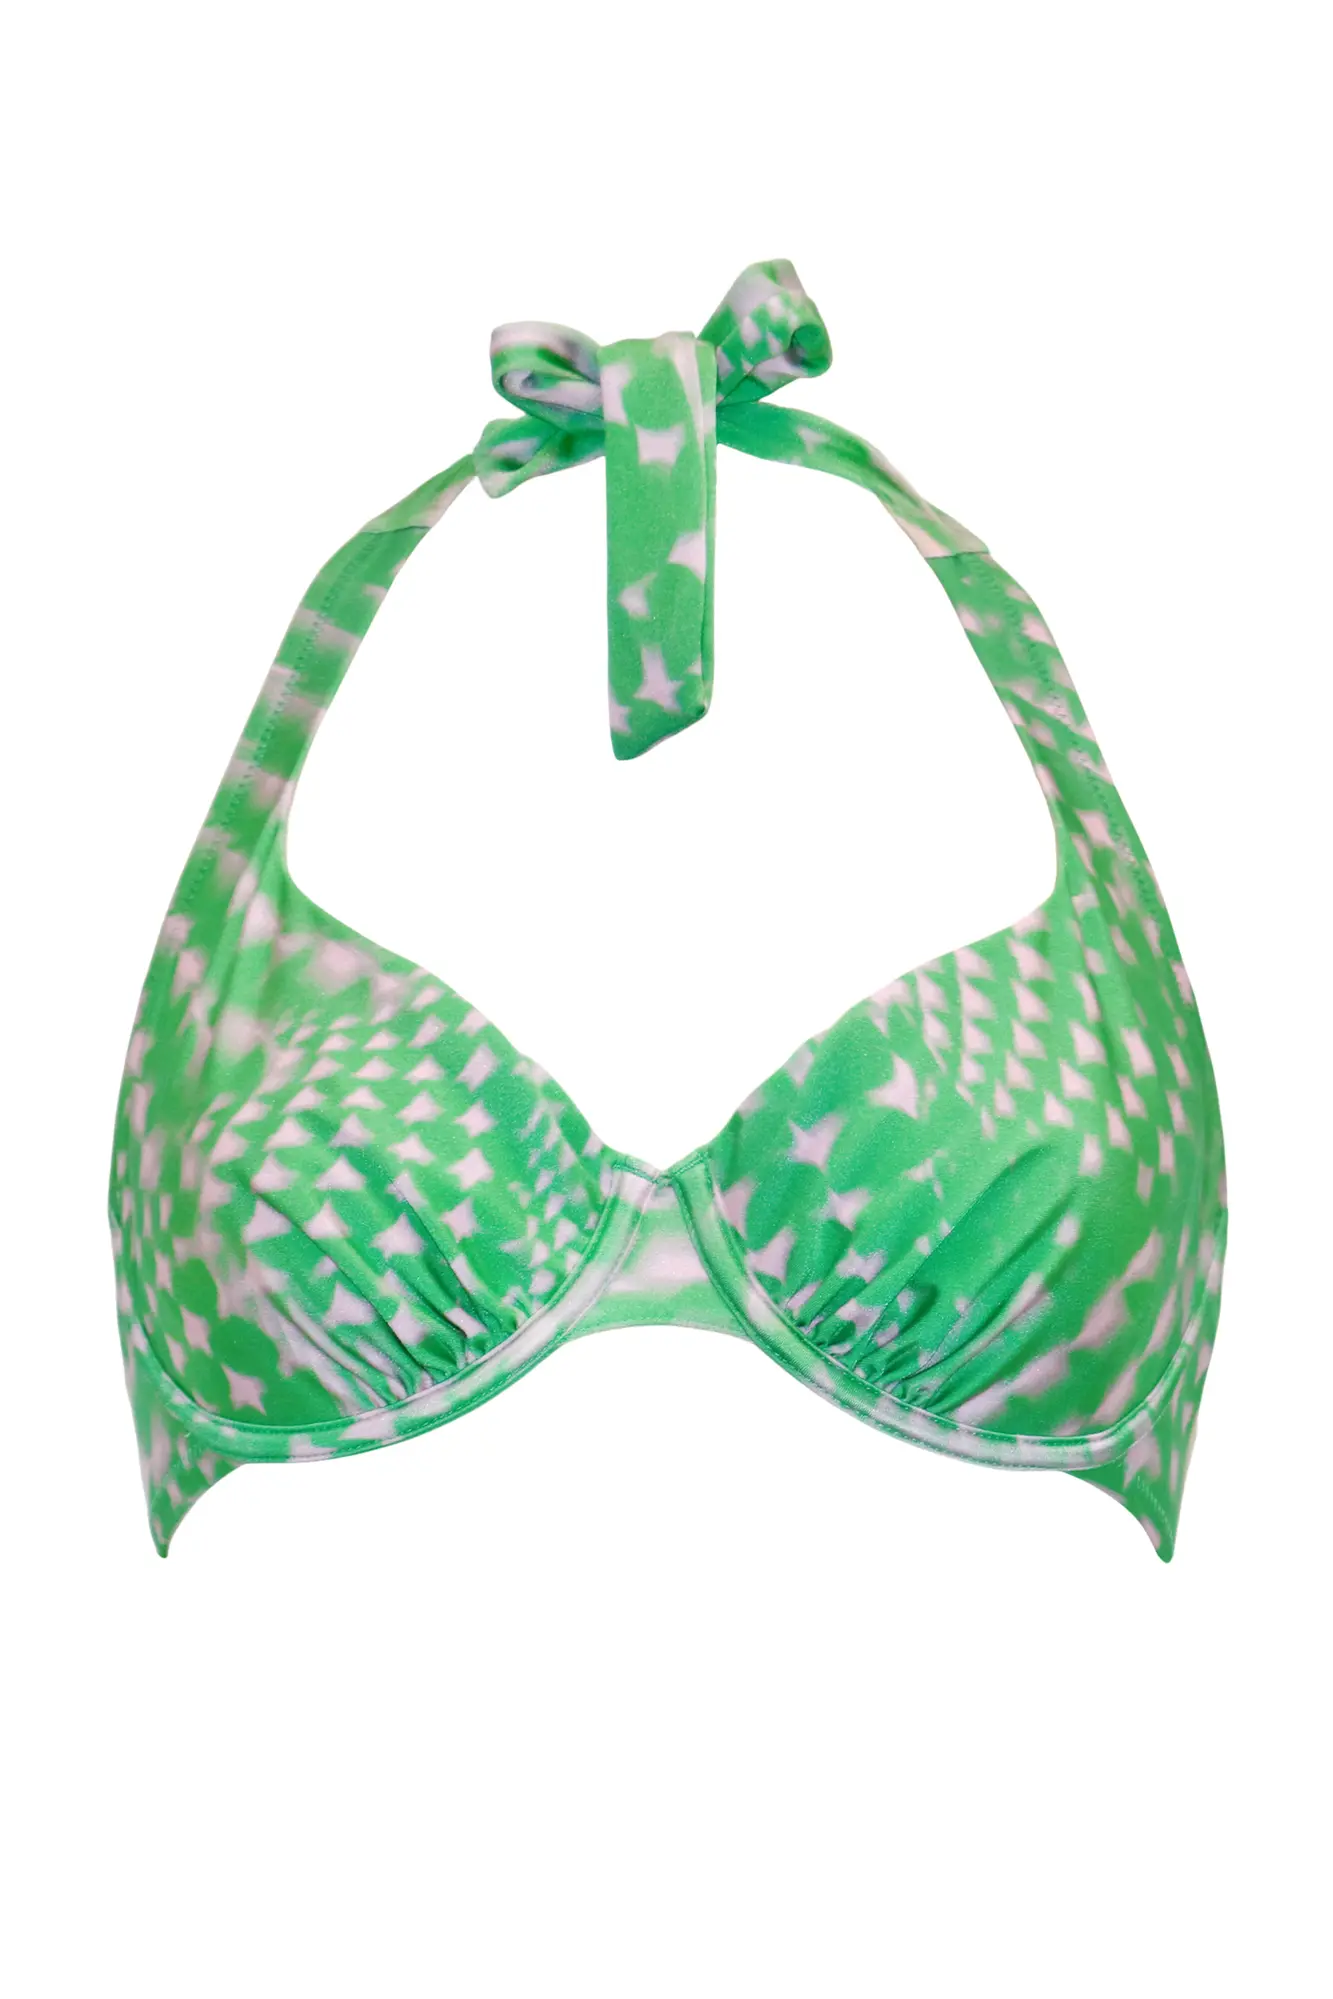 Portofino Halter Underwired Bikini Top in Green/Pink | Pour Moi